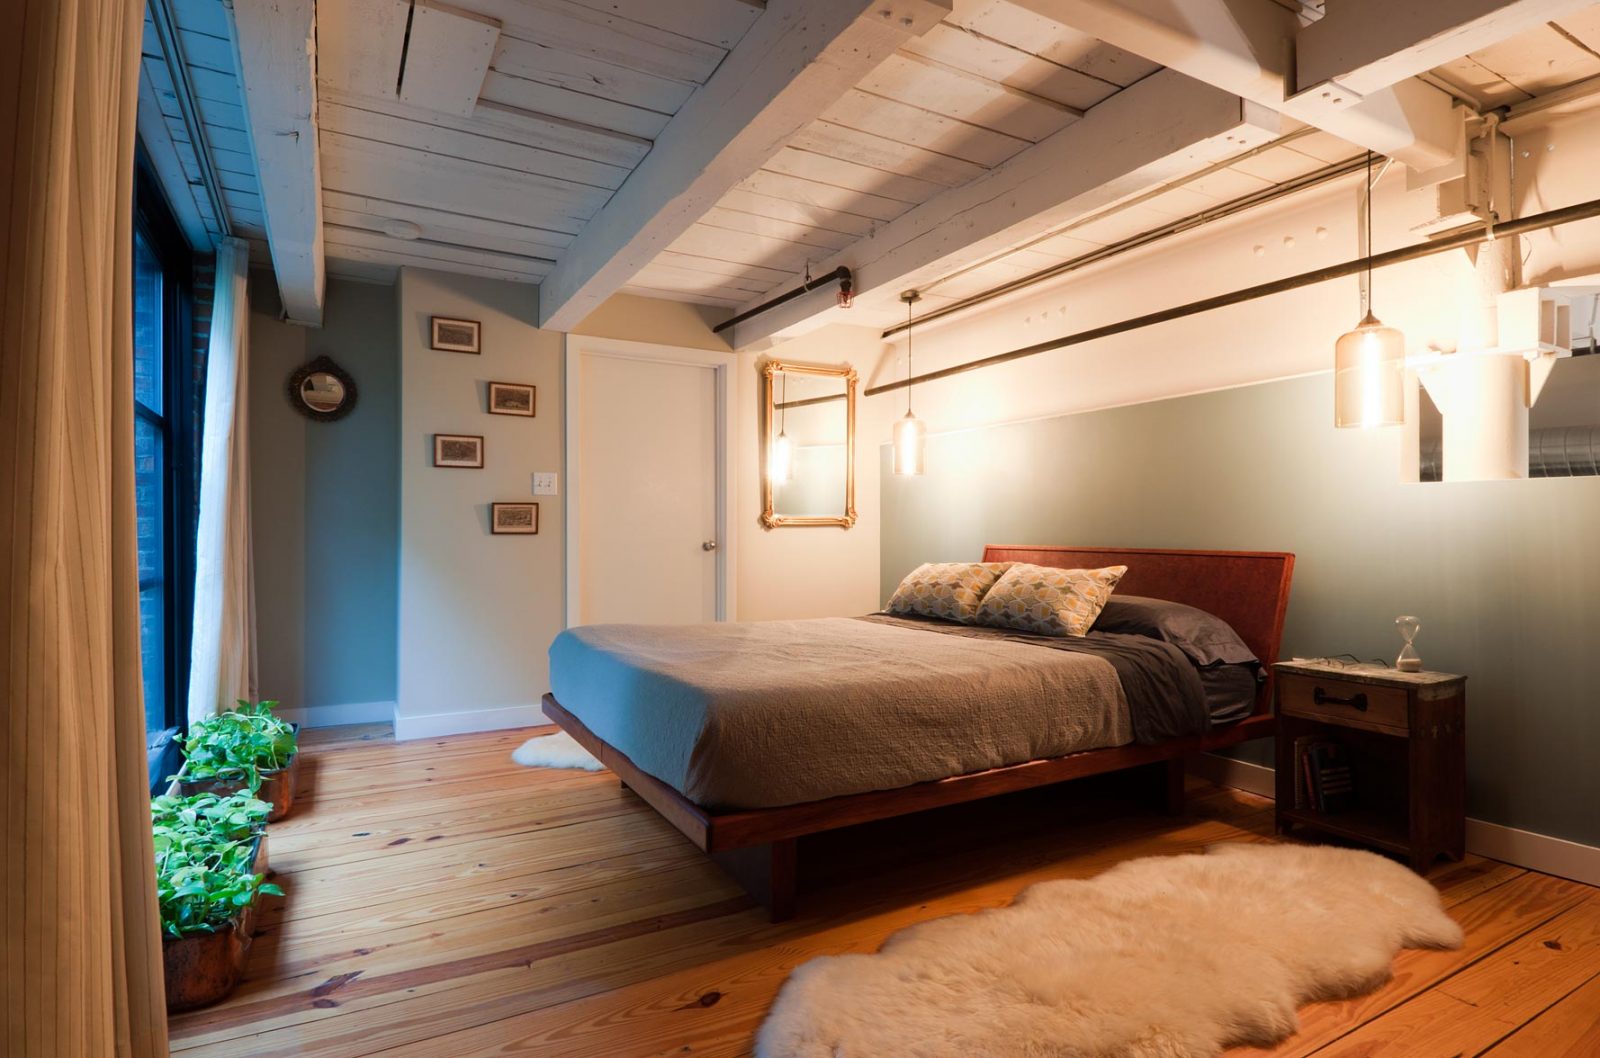 Dormitorio con techos de madera :: Imágenes y fotos